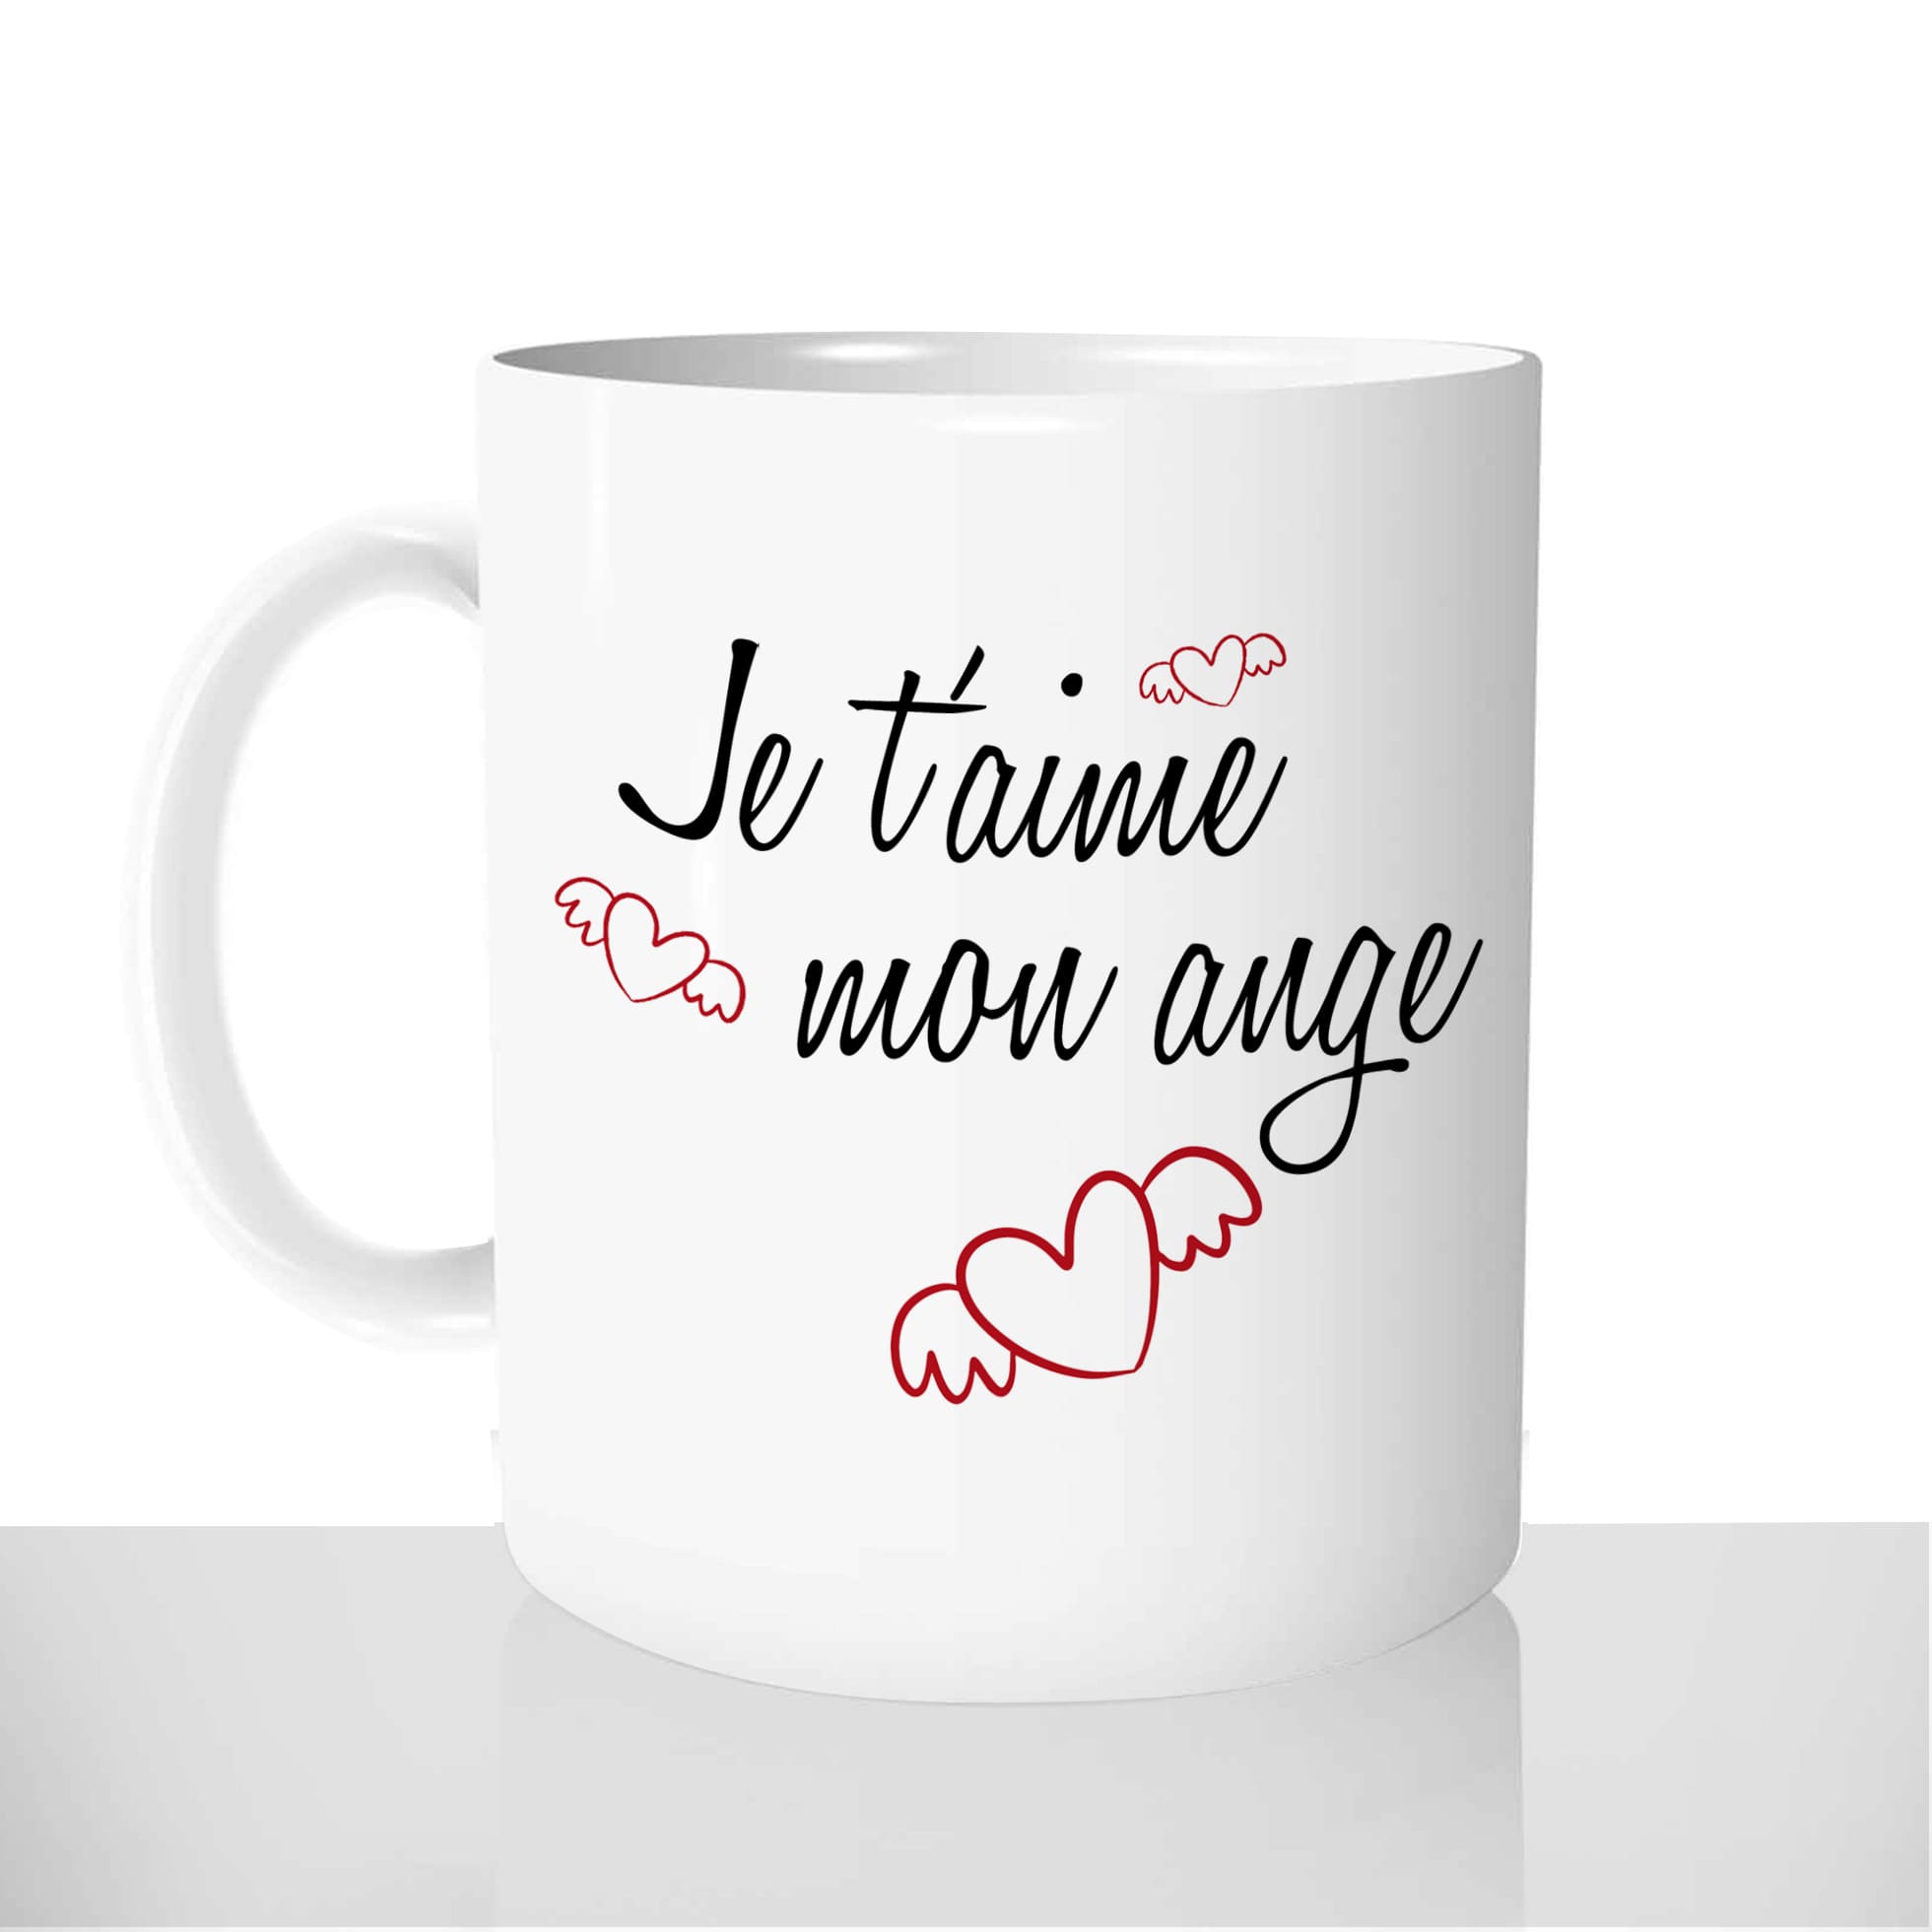 mug-blanc-céramique-personnalisable-tasse-11oz-je-taime-mon-ange-amour-couple-saint-valentin-personnalisé-fun-idée-cadeau-original